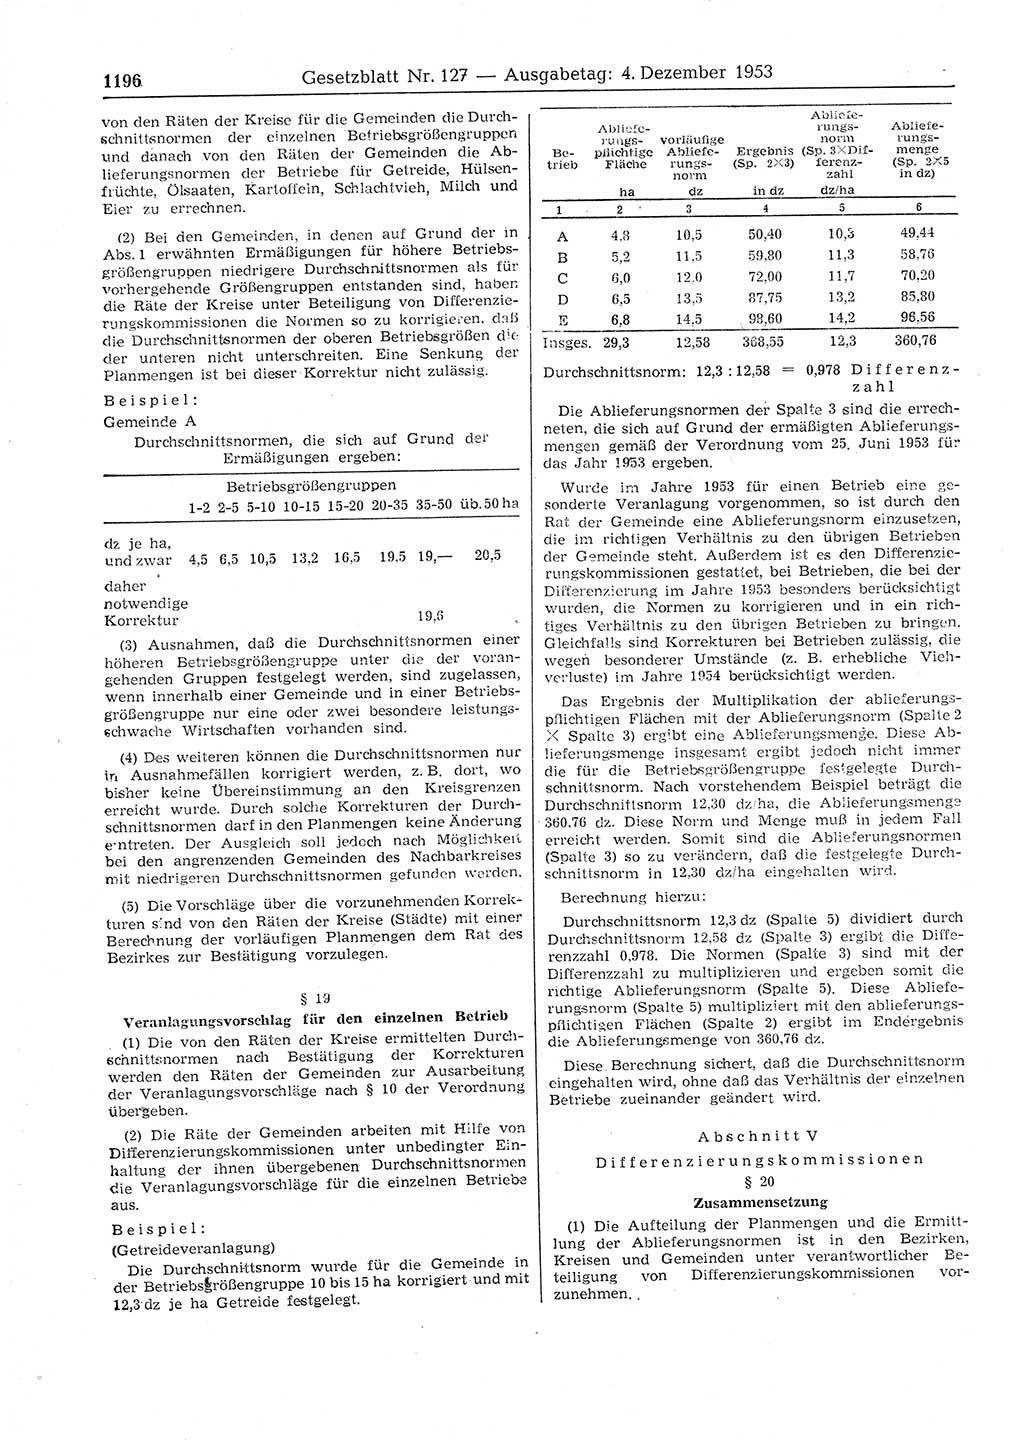 Gesetzblatt (GBl.) der Deutschen Demokratischen Republik (DDR) 1953, Seite 1196 (GBl. DDR 1953, S. 1196)